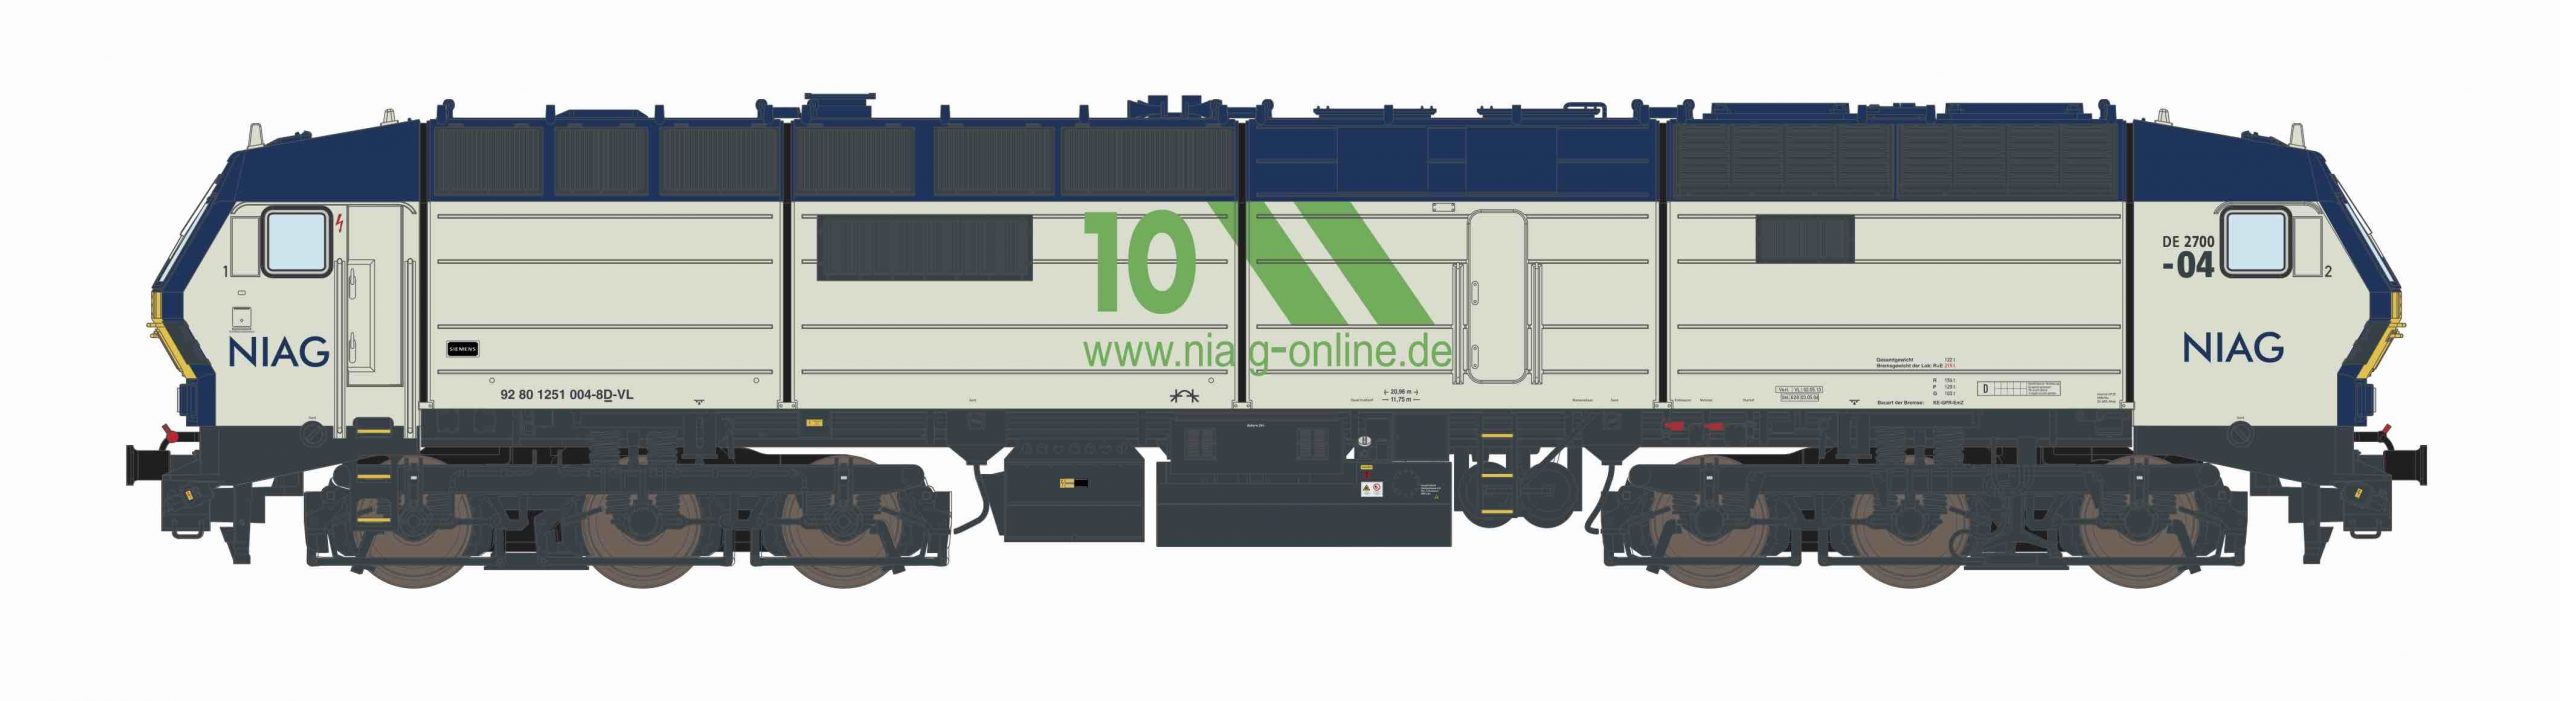 79601: Diesellok DE2700 NIAG (Gleichstrom) mit Sound